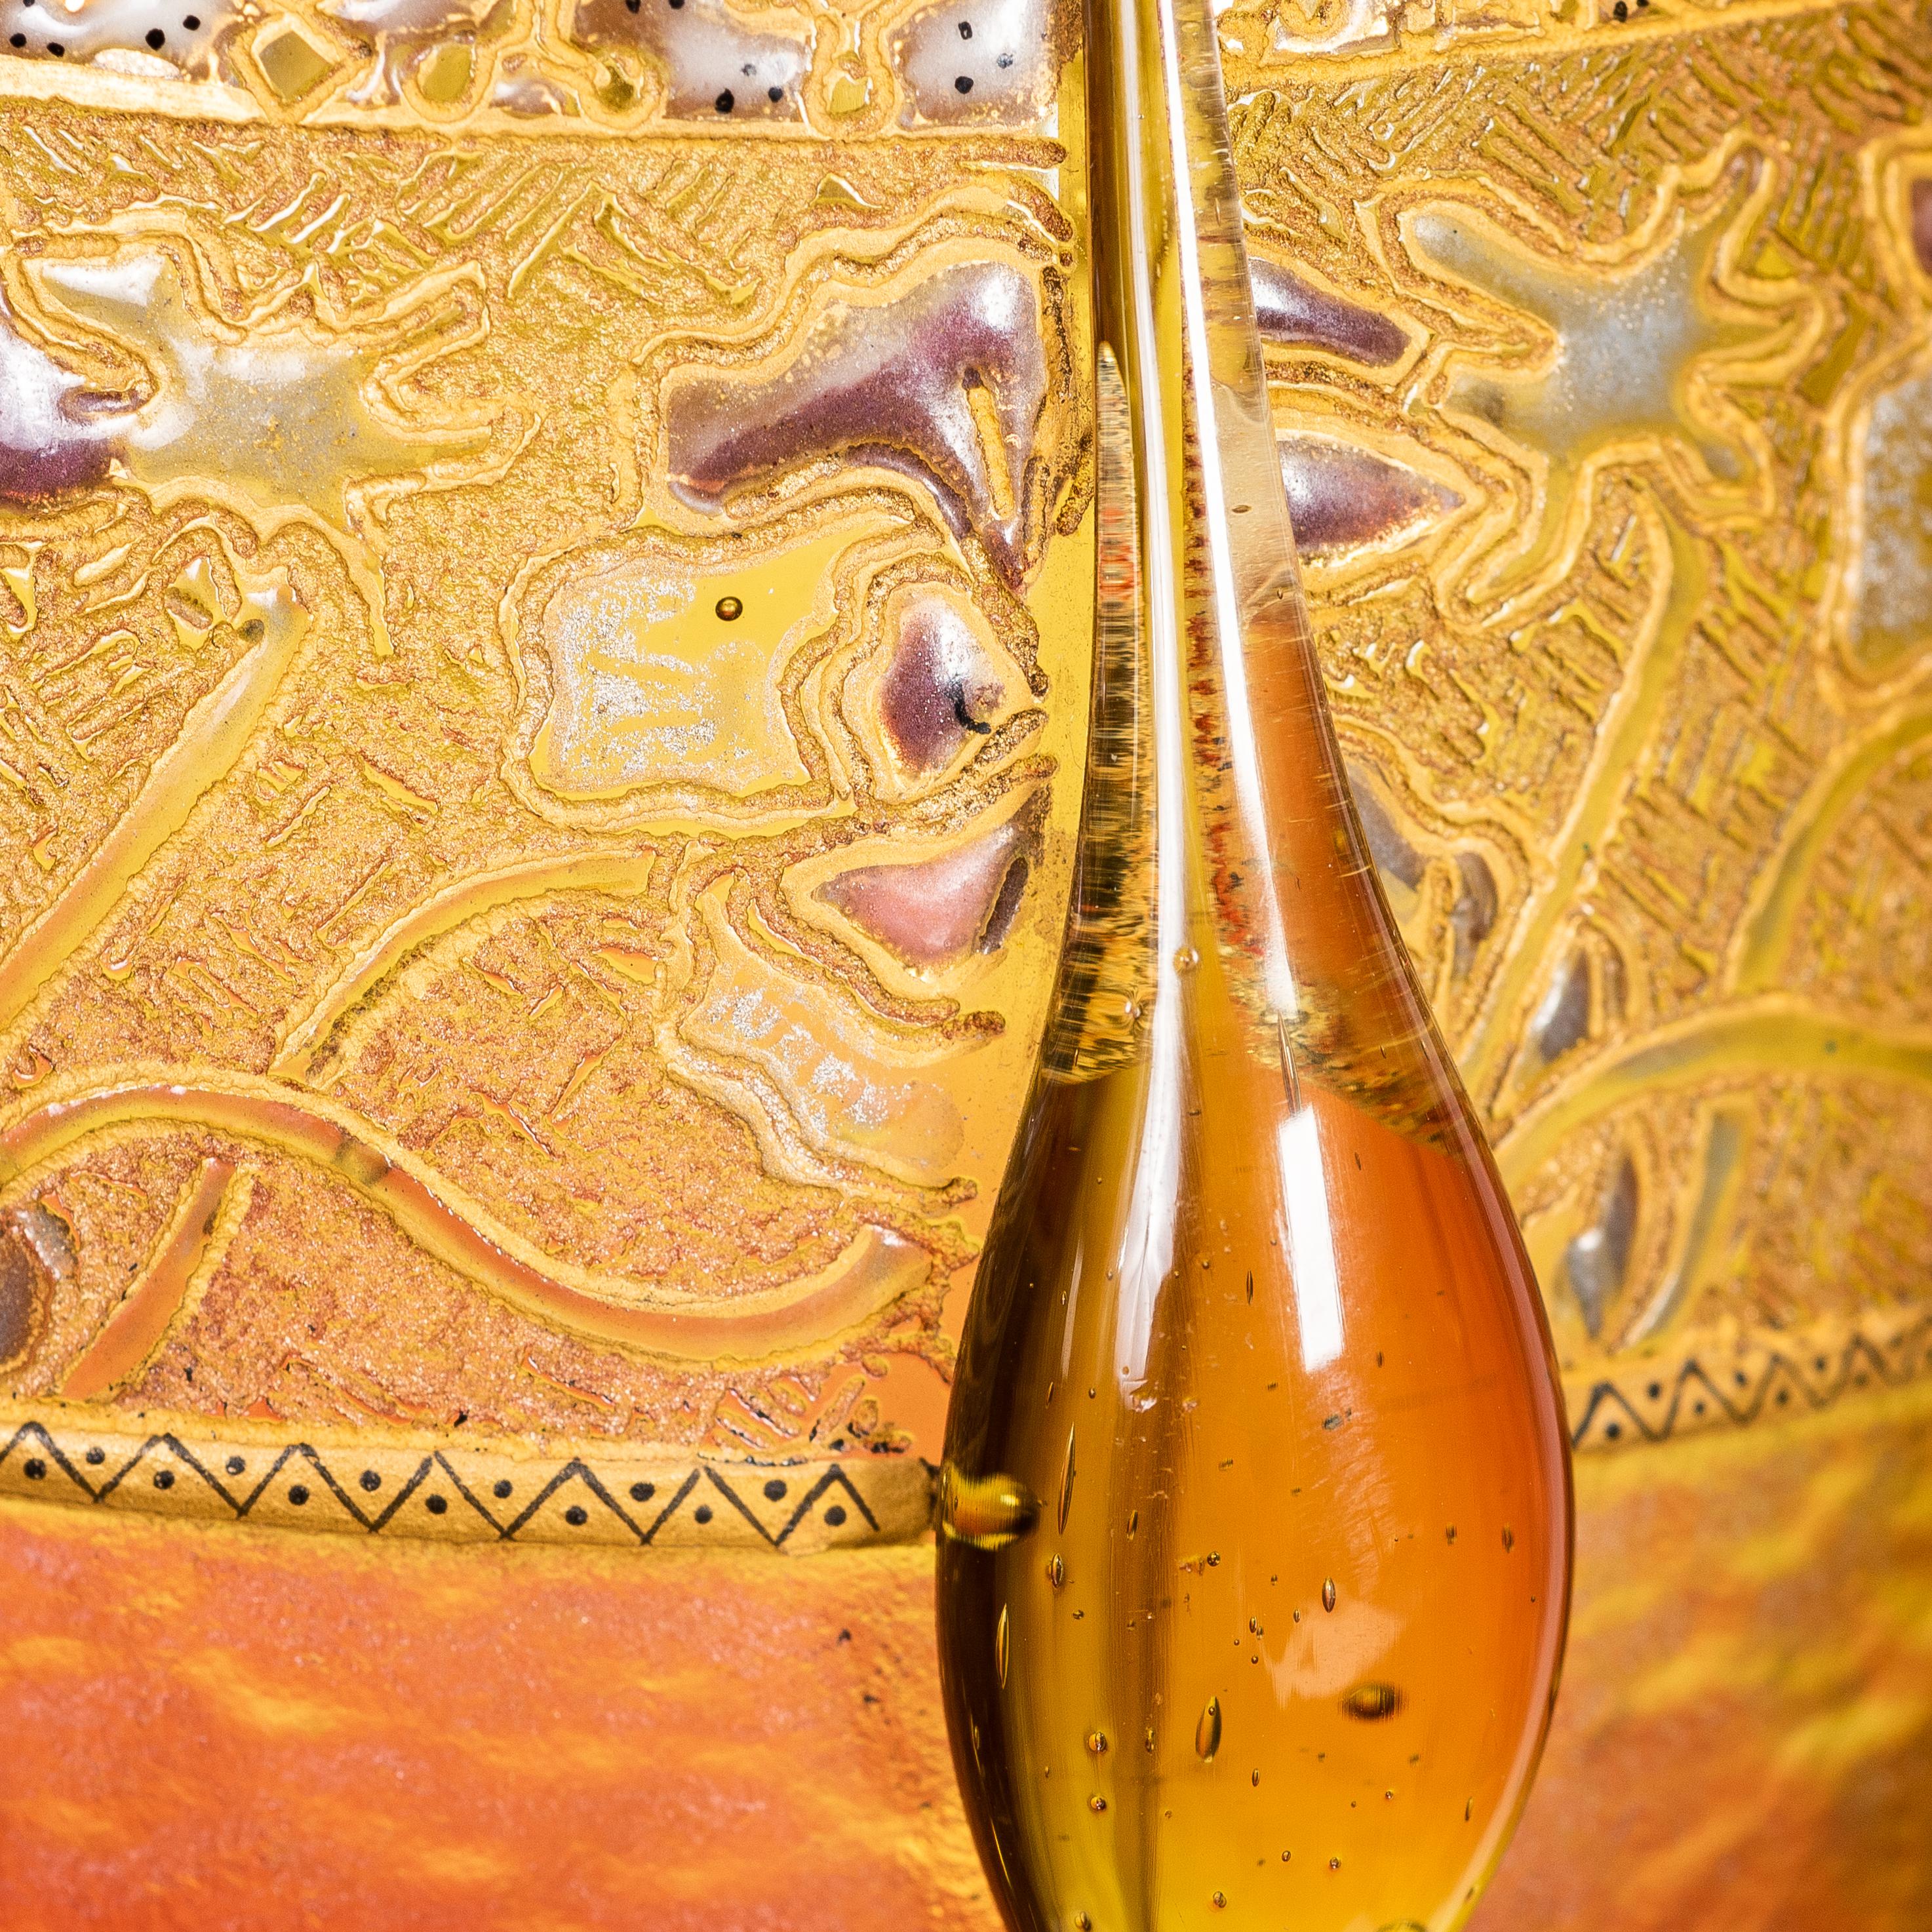 Vase en verre Daum Nancy gravé à l'acide, camée et émaillé,
France, vers 1910
décorée de grandes fleurs jaunes émanant de tiges et de feuilles vert foncé, sur un fond givré et tacheté de rose, d'améthyste, de jaune et de blanc, sur un pied en